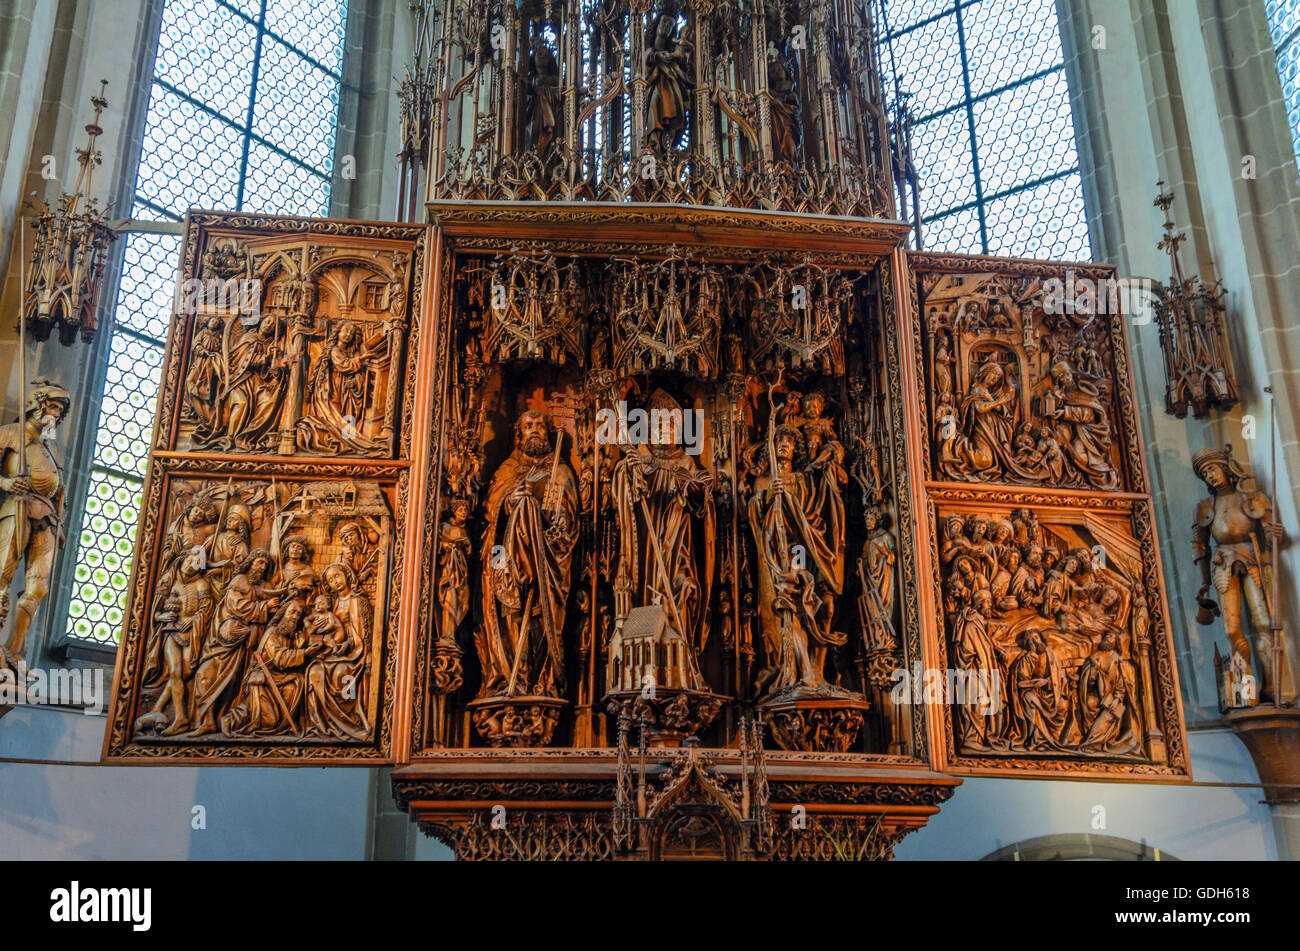 Kefermarkt: Kefermarkt winged altar in church, Austria, Oberösterreich, Upper Austria, Mühlviertel Stock Photo